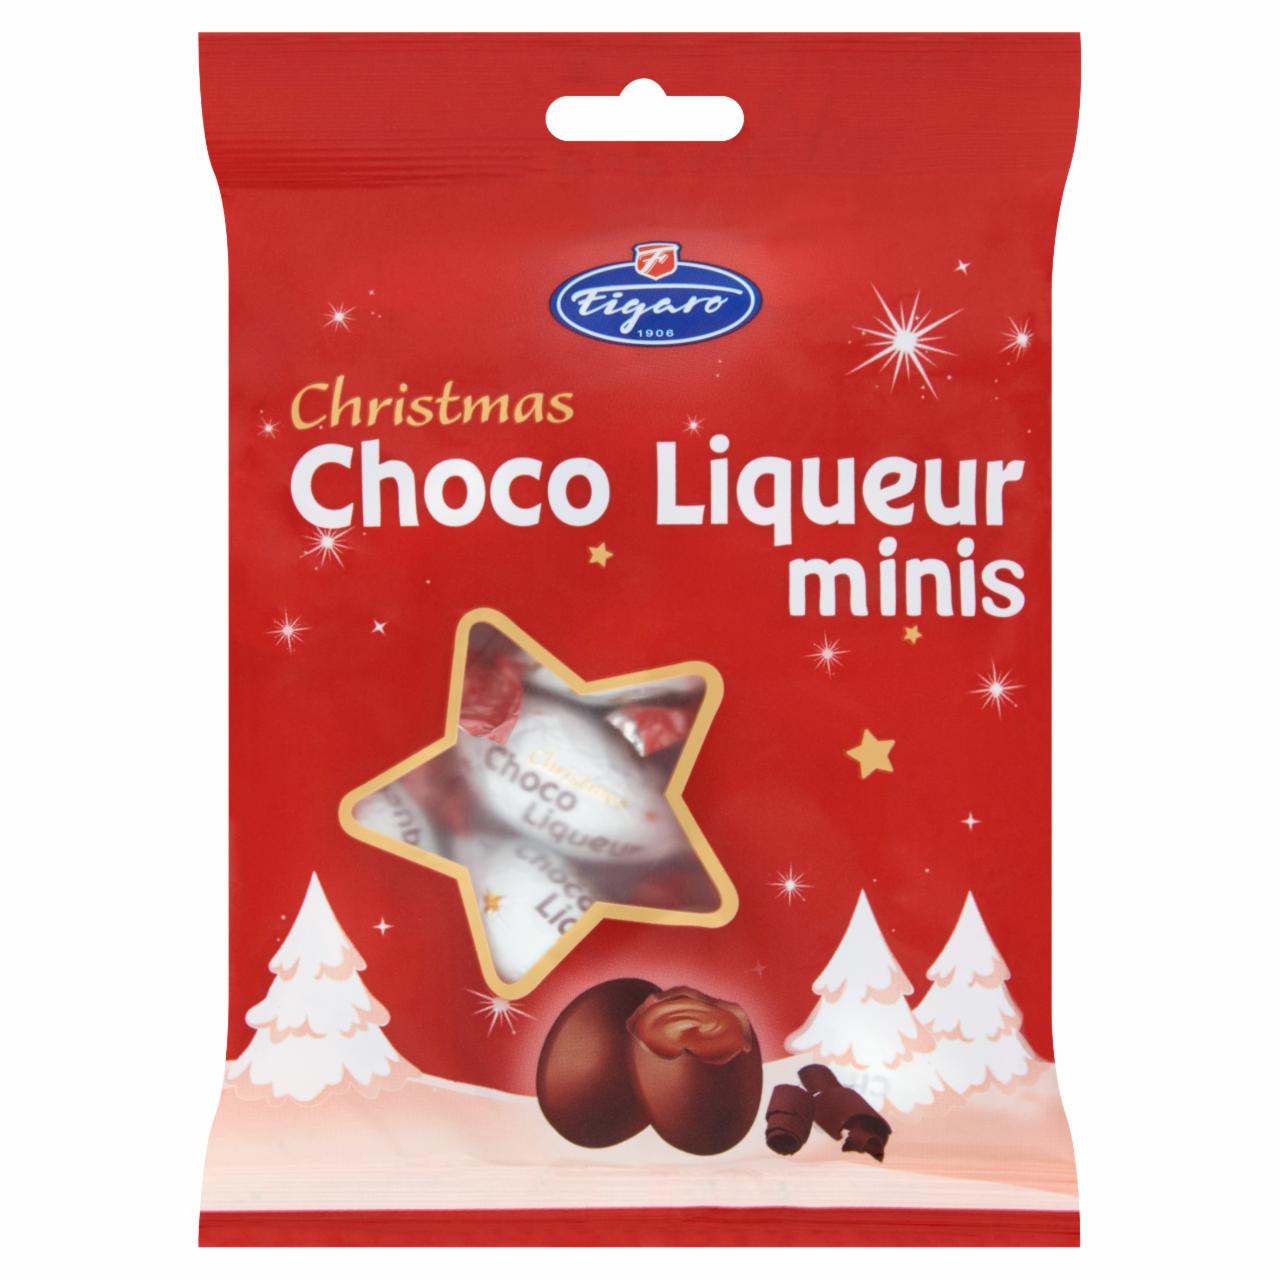 Képek - Figaro Christmas Choco Liqueur Minis csokoládélikőr ízű krémmel töltött tejcsokoládé 110 g